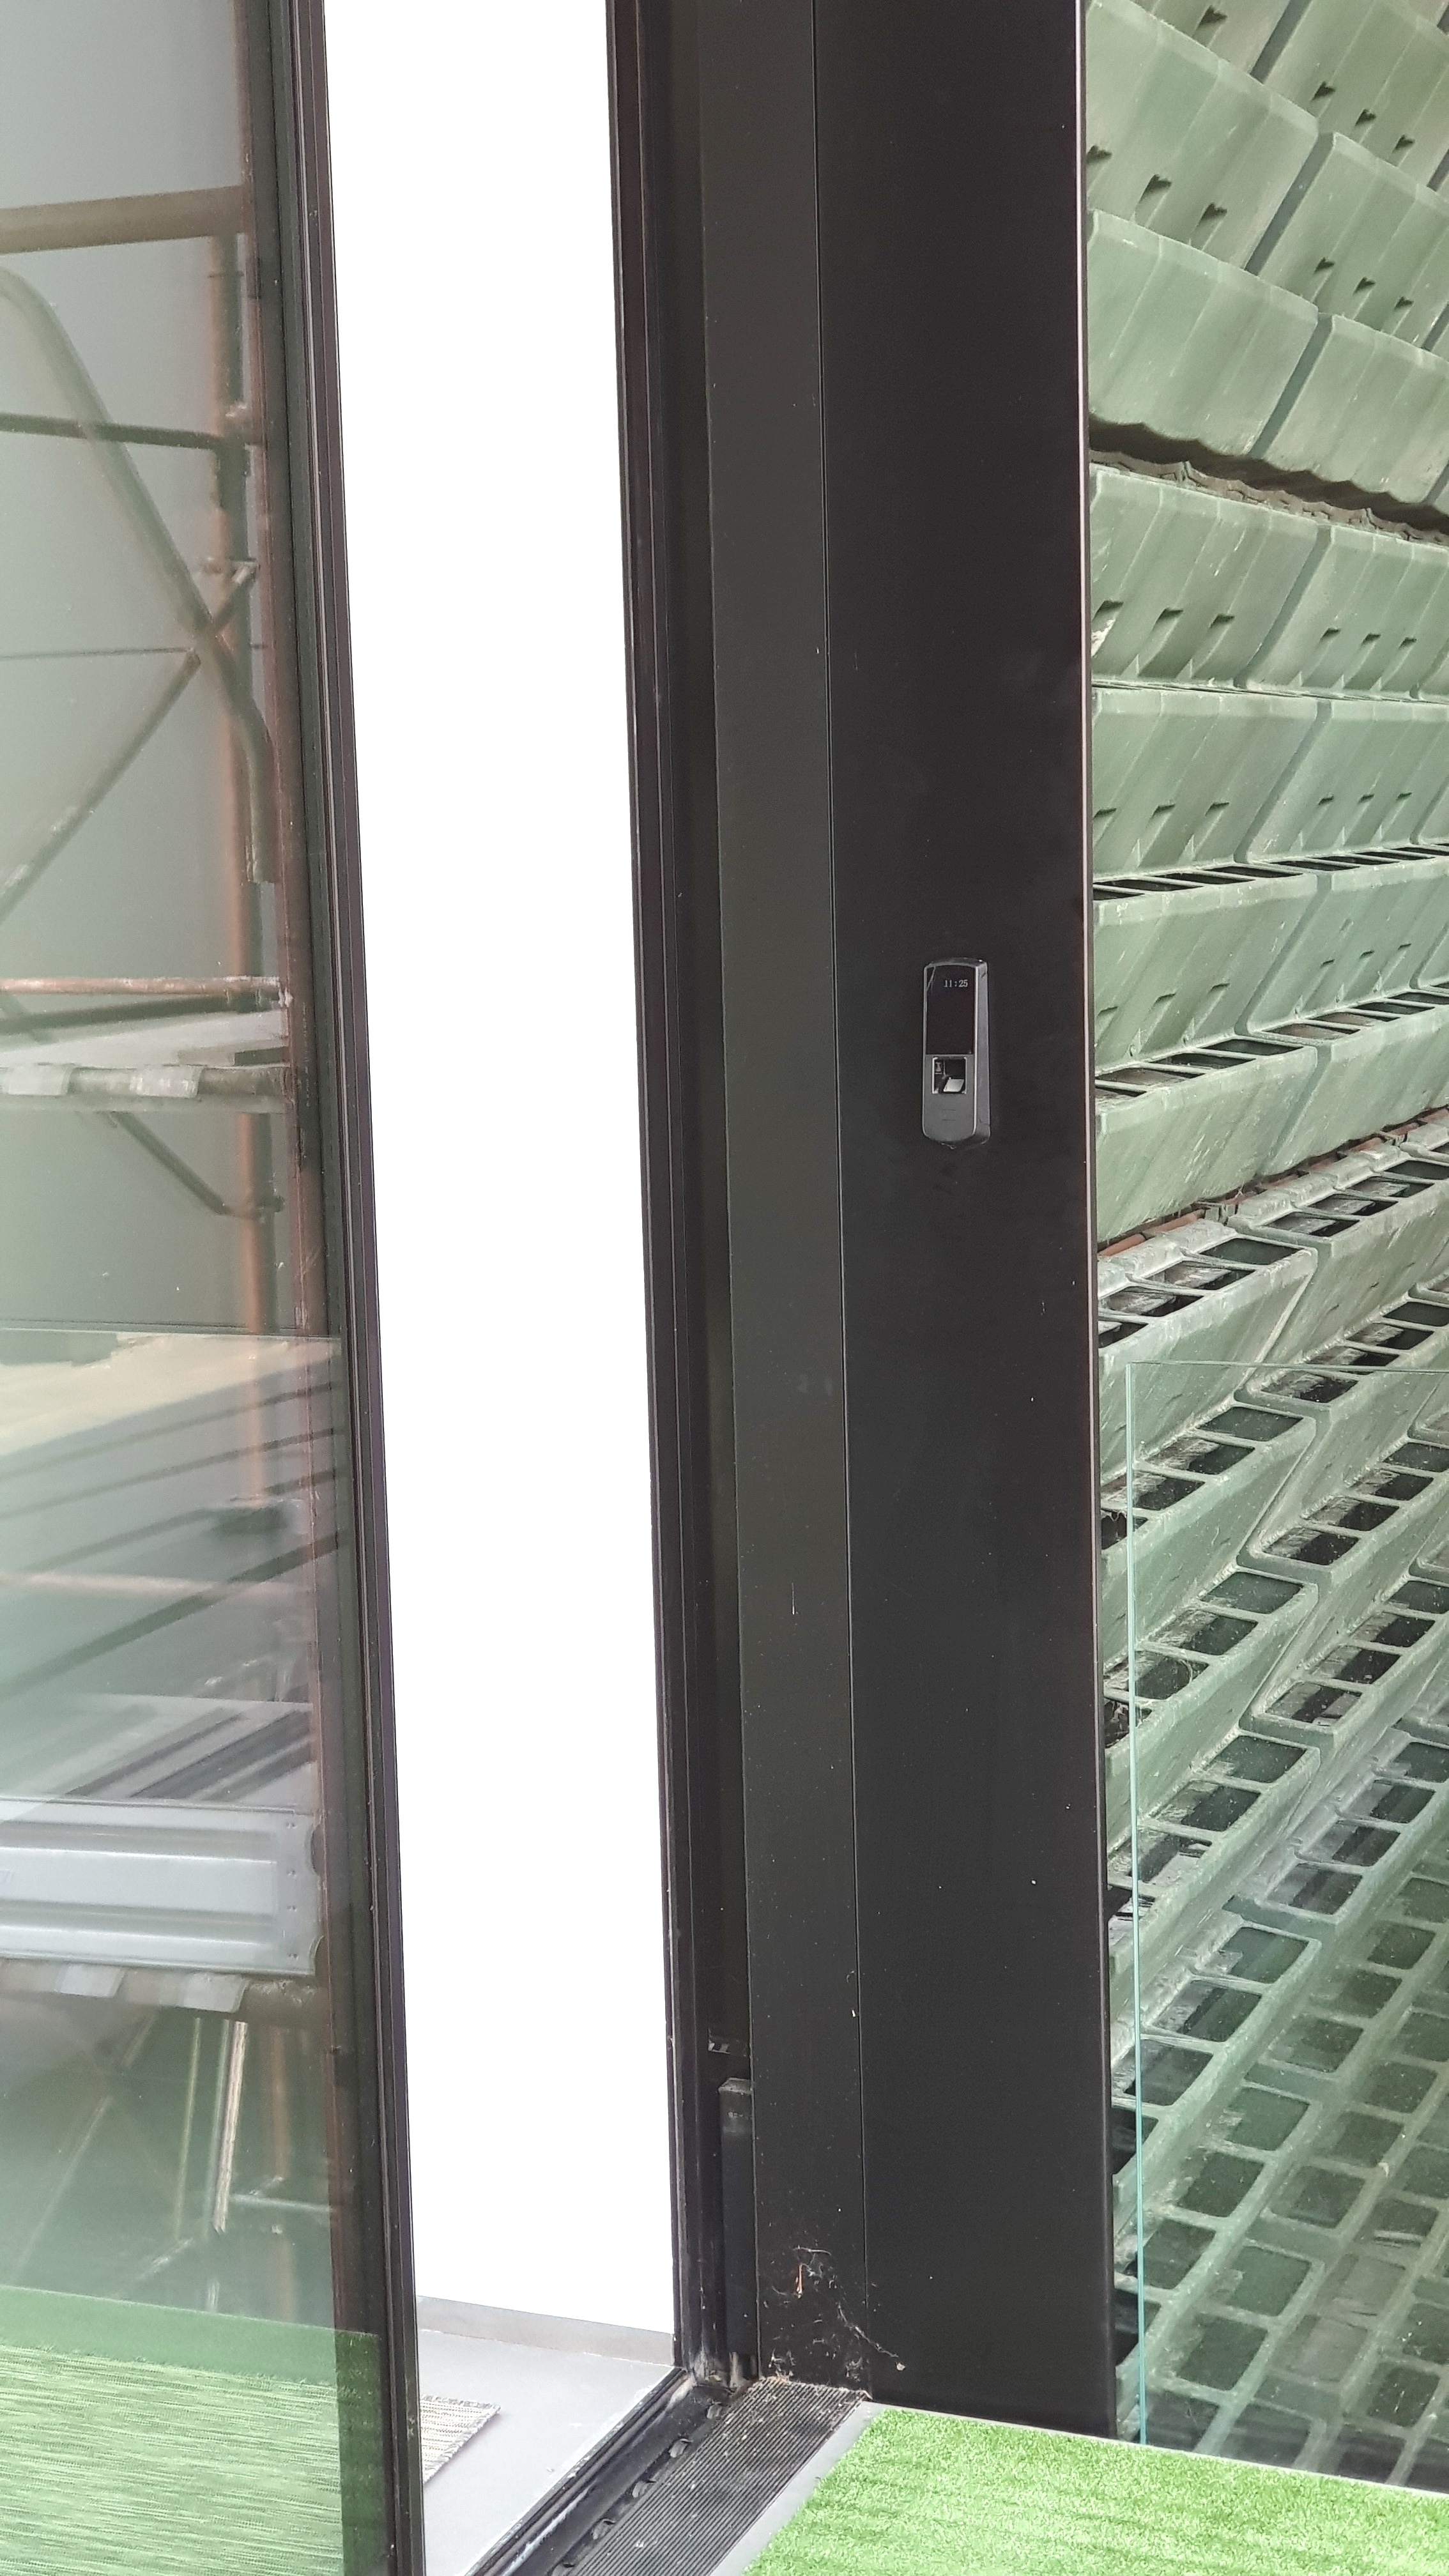  Anviz P7 controllo accessi biometrico con lan Poe installato in esterno azienda Rovigo